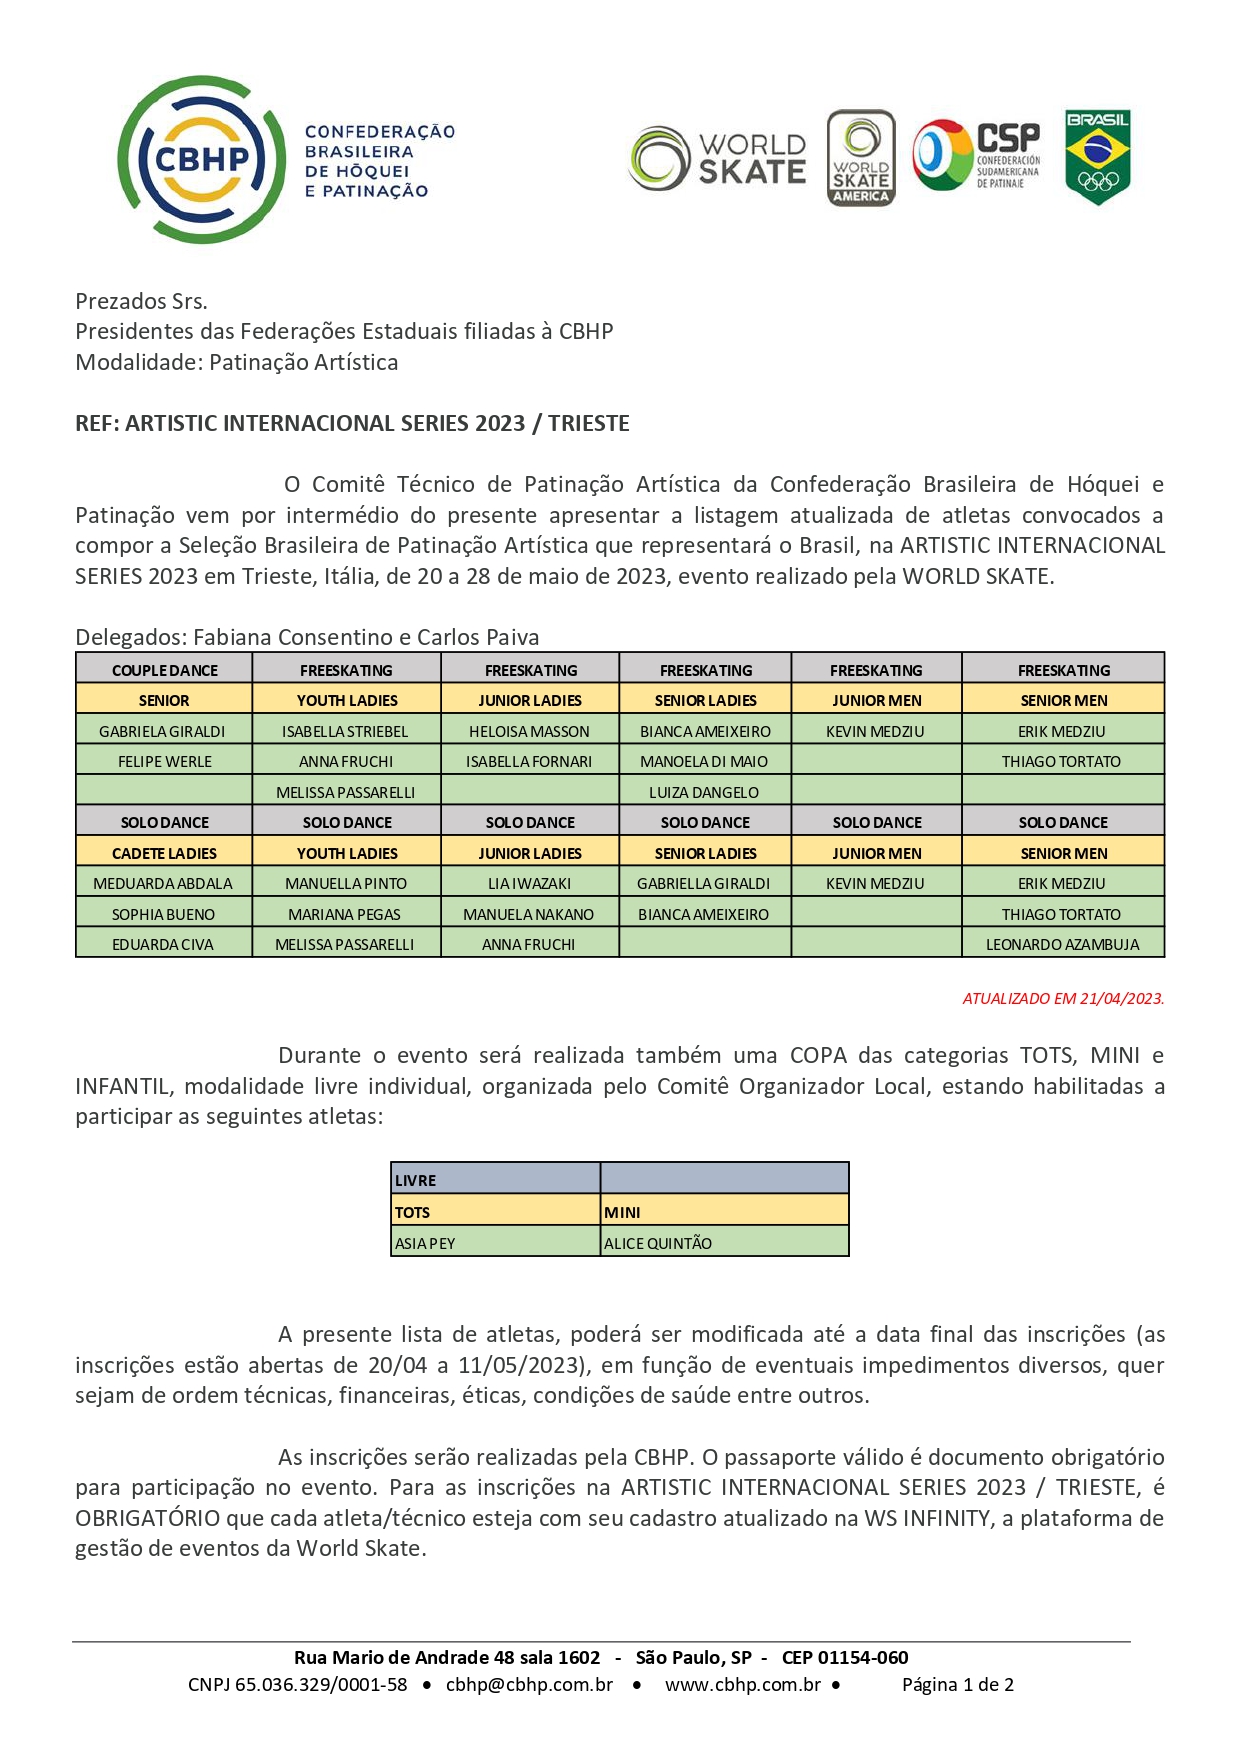 Decathlon Morumbi – CBHP – Confederação Brasileira de Hóquei e Patinação